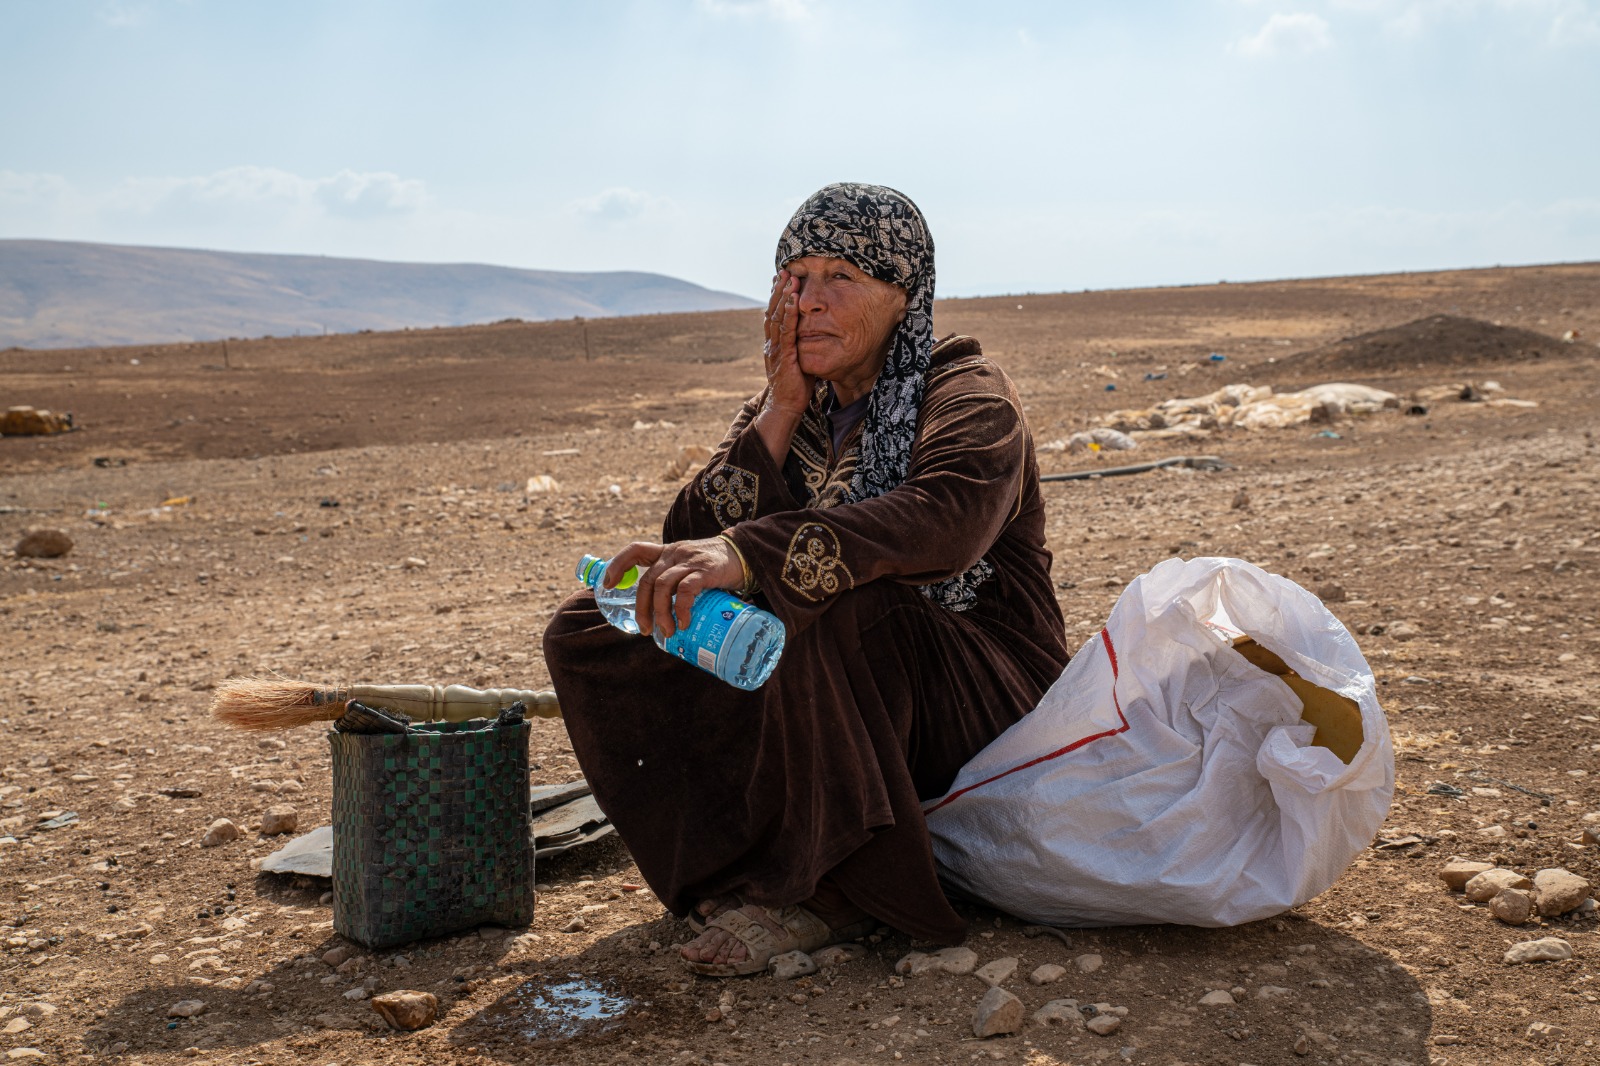 כמויות המים שמקבלים הפלסטינים נופלות מהמינימום שקובע ארגון הבריאות העולמי. פלסטינית אחרי הריסת ביתה בחומסה ליד בקעת הירדן (צילום: מתן גולן)